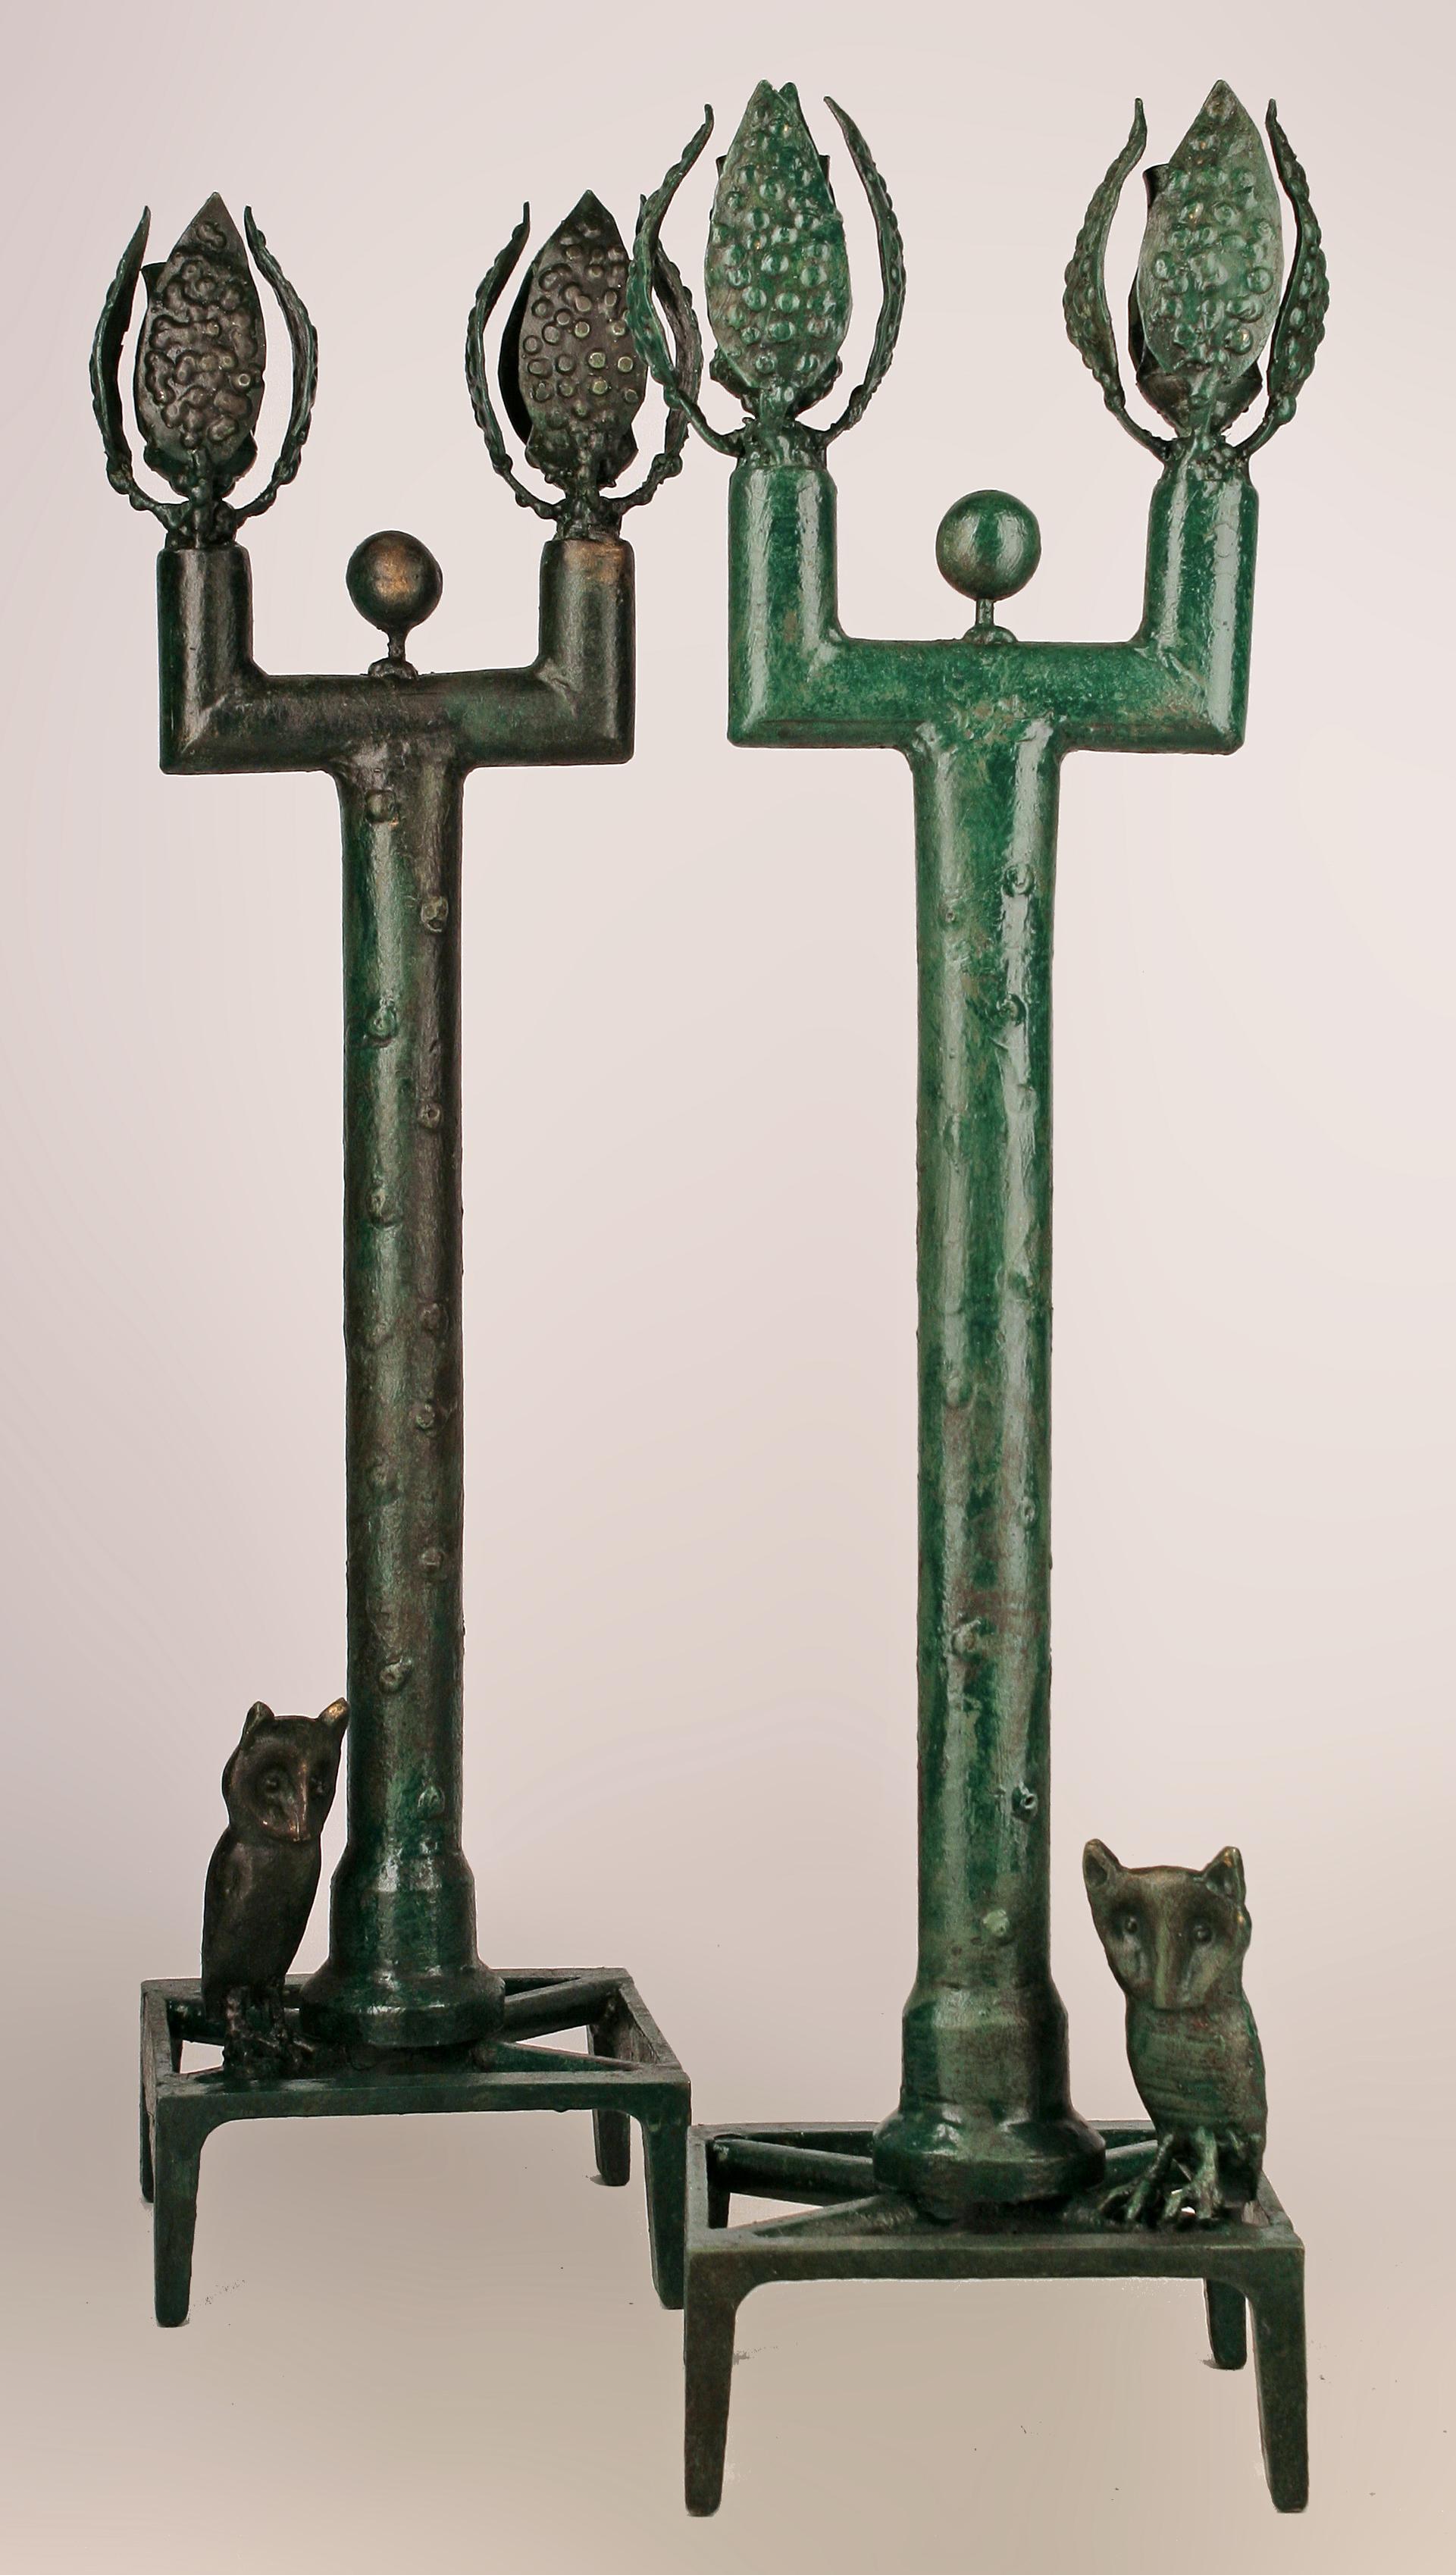 Paire de bougeoirs en bronze français de style expressionniste Giacometti de la fin du 20e siècle

Par : Diego Giacometti (dans le style de)
MATERIAL : bronze, cuivre, métal
Technique : fonte, patine, moulage, travail du métal
Dimensions : 6 po x 6